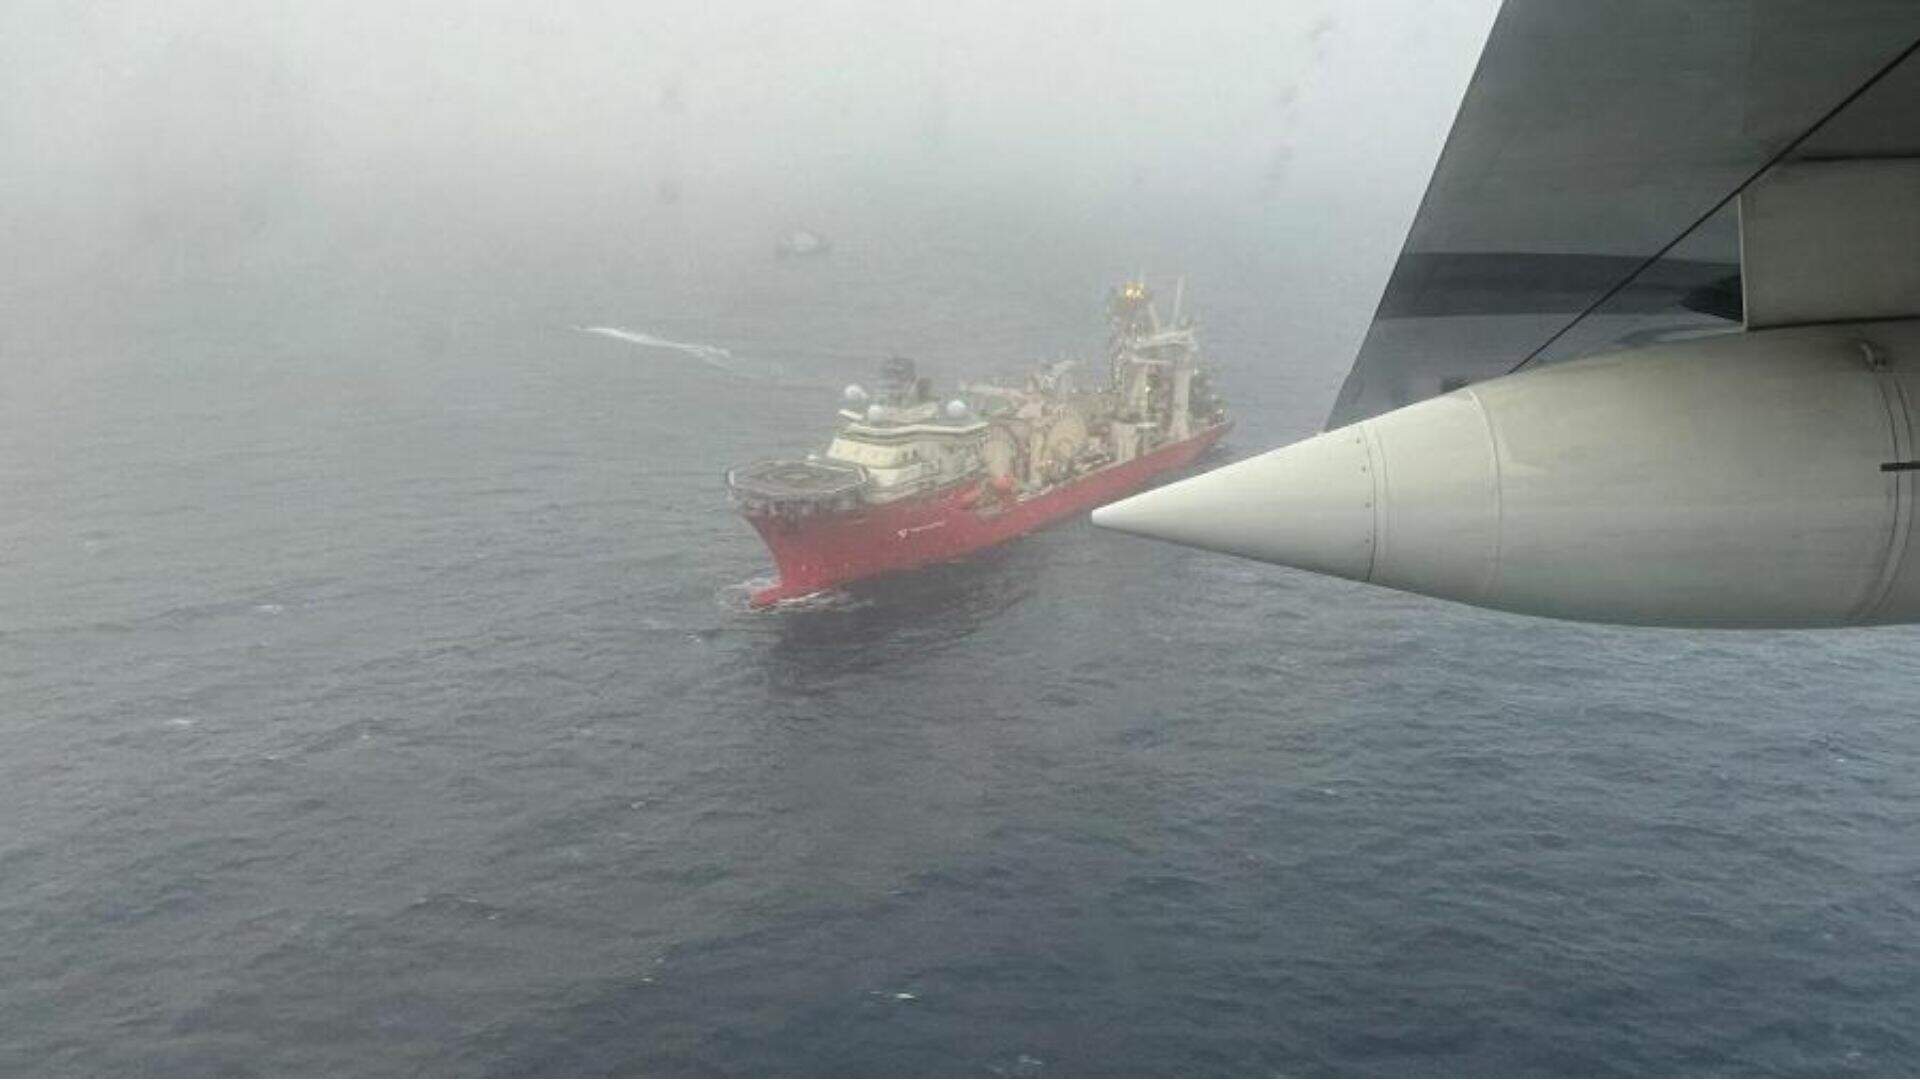 Tragédia do submarino: Pela primeira vez, pedaços de ‘Titan’ são resgatadas e imagens viralizam - Metropolitana FM